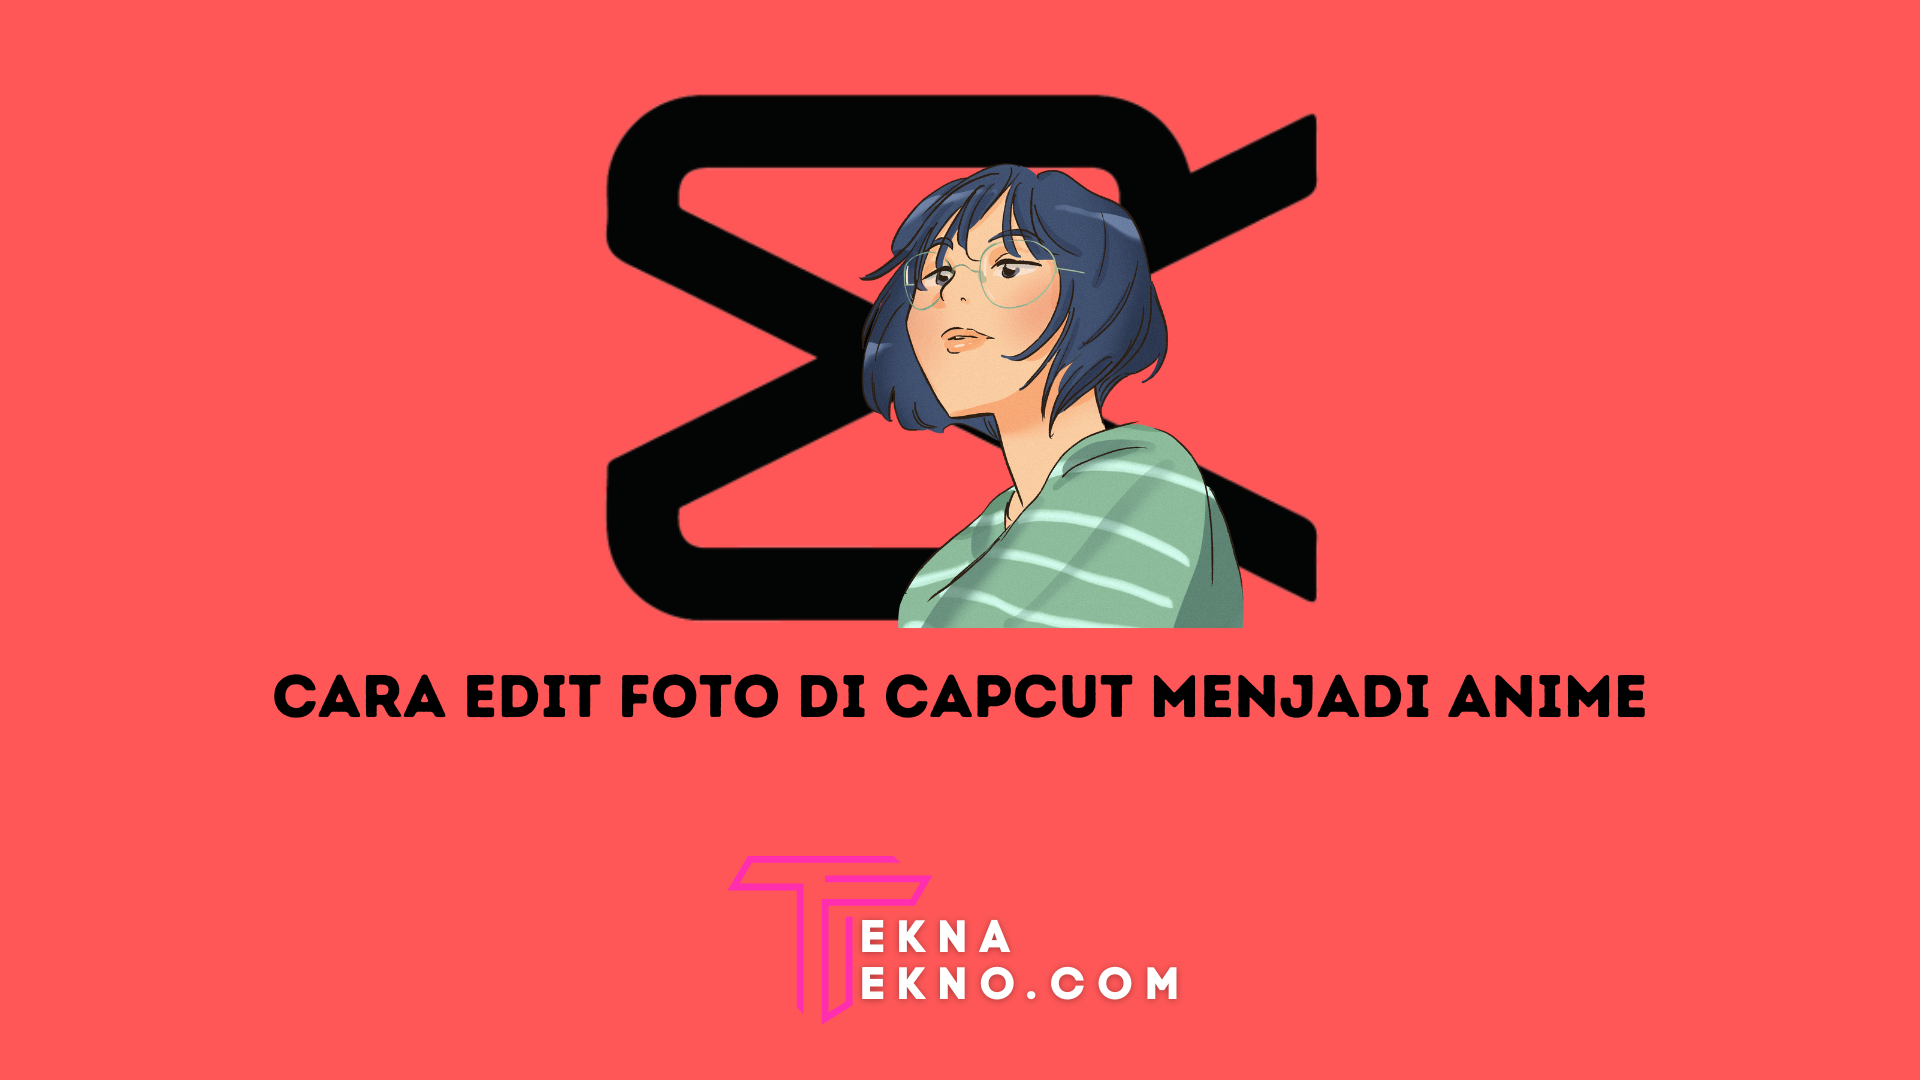 5 Cara Edit Foto di Capcut Menjadi Anime yang Lagi Viral